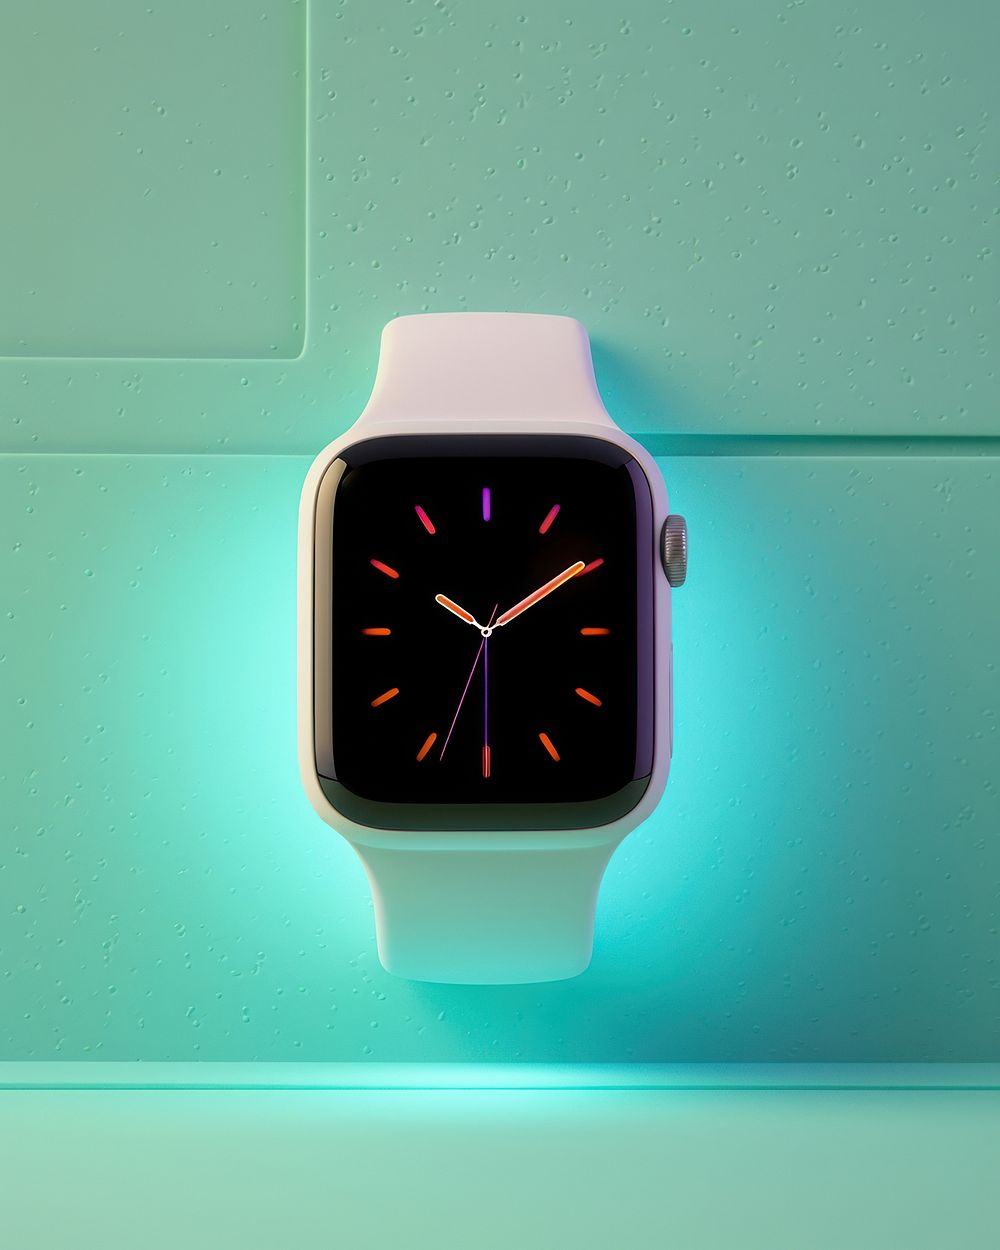 Smarth watch wristwatch illuminated technology. AI generated Image by rawpixel.